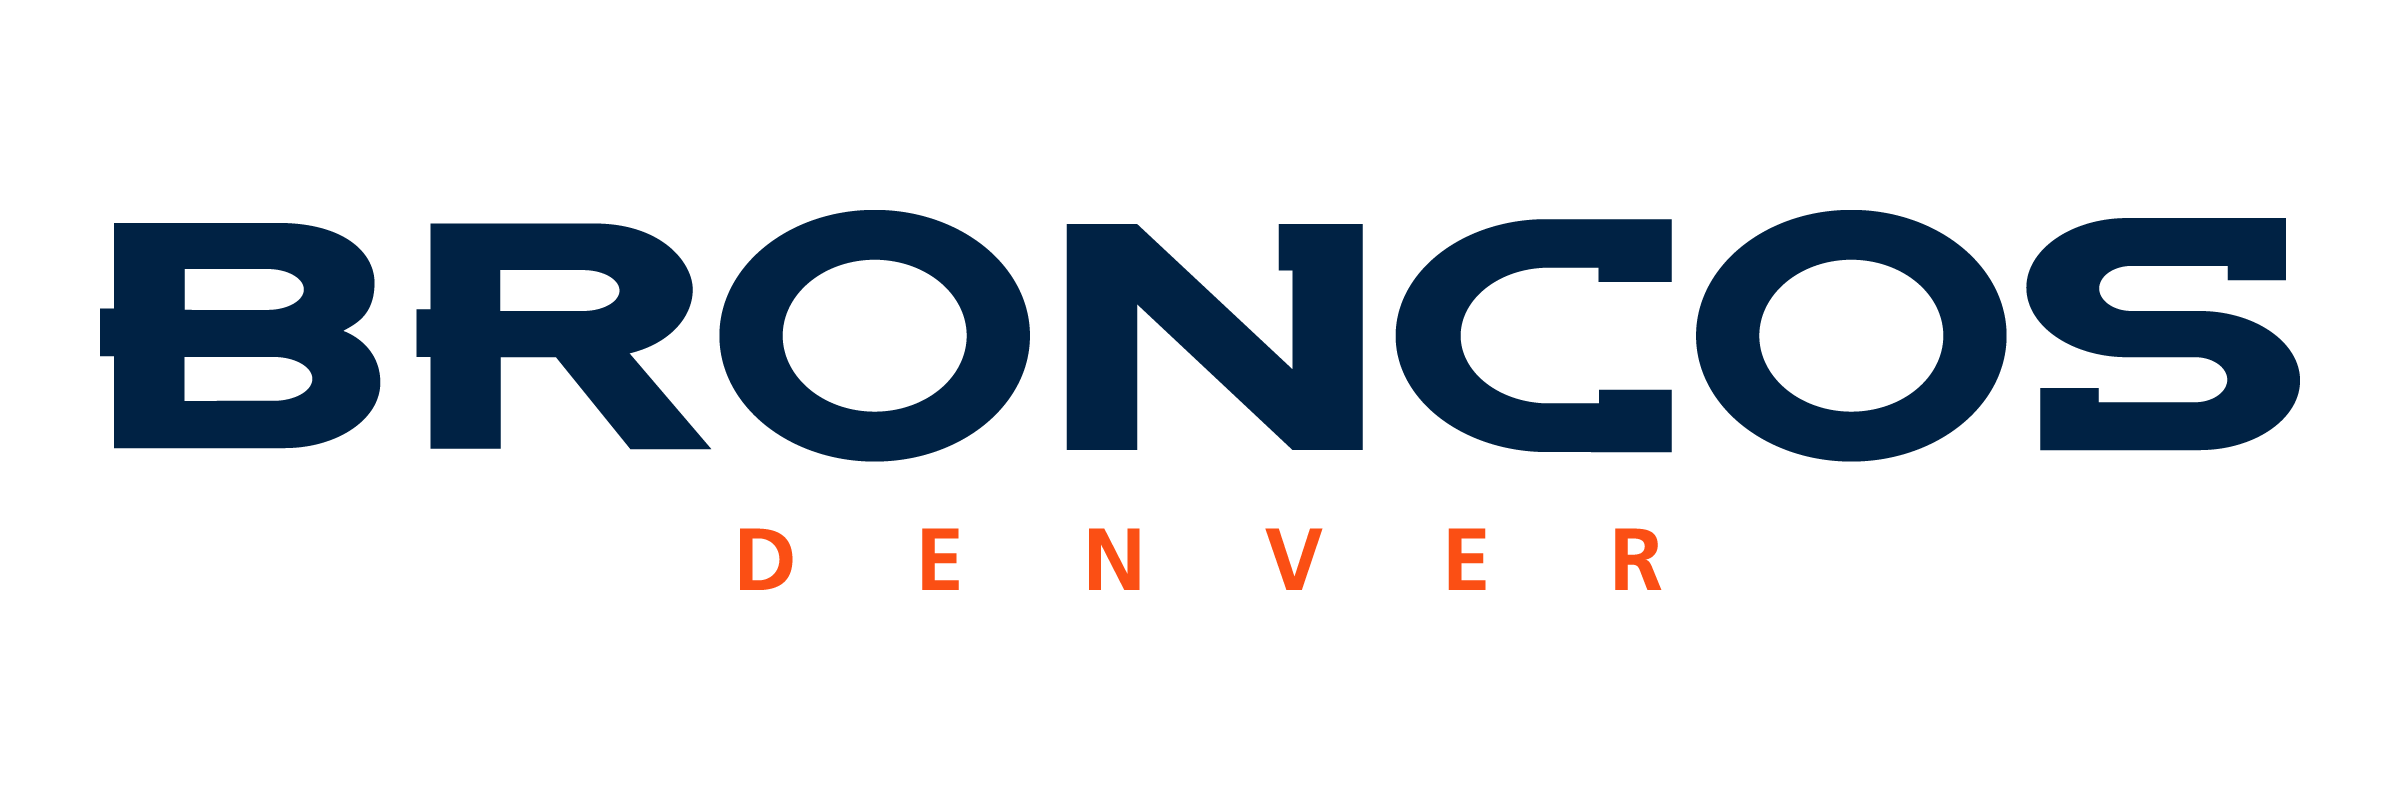 Denver Broncos Logo - Denver Broncos Logo PNG Transparent & SVG Vector - Freebie Supply